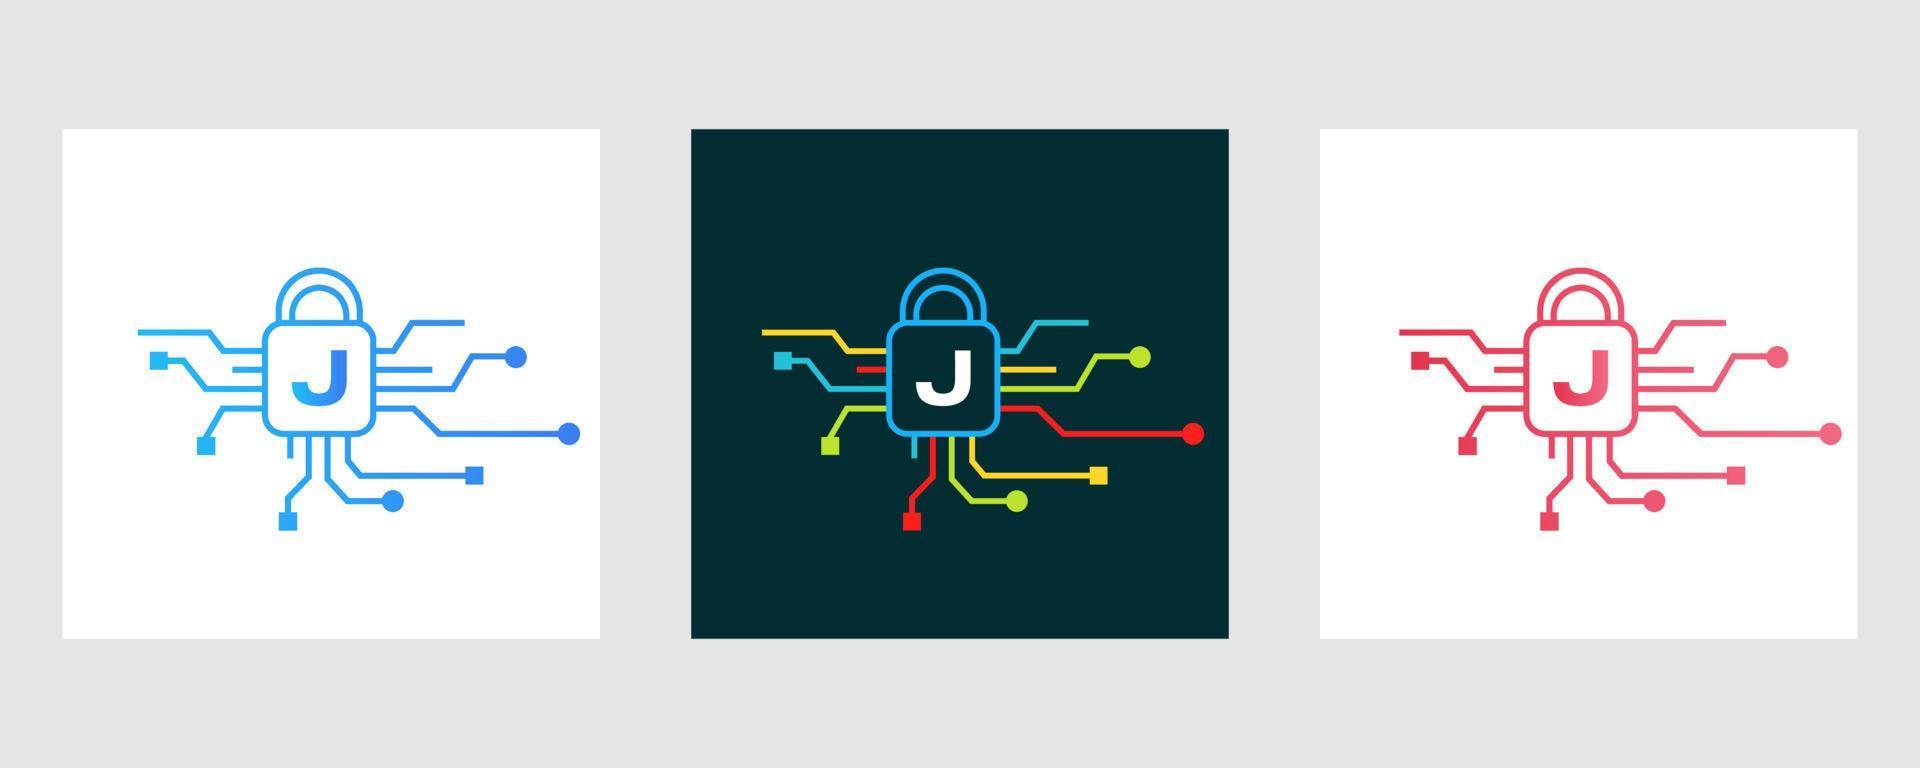 logotipo de seguridad cibernética de la letra j. señal de seguridad de Internet, protección cibernética, tecnología, símbolo de biotecnología vector